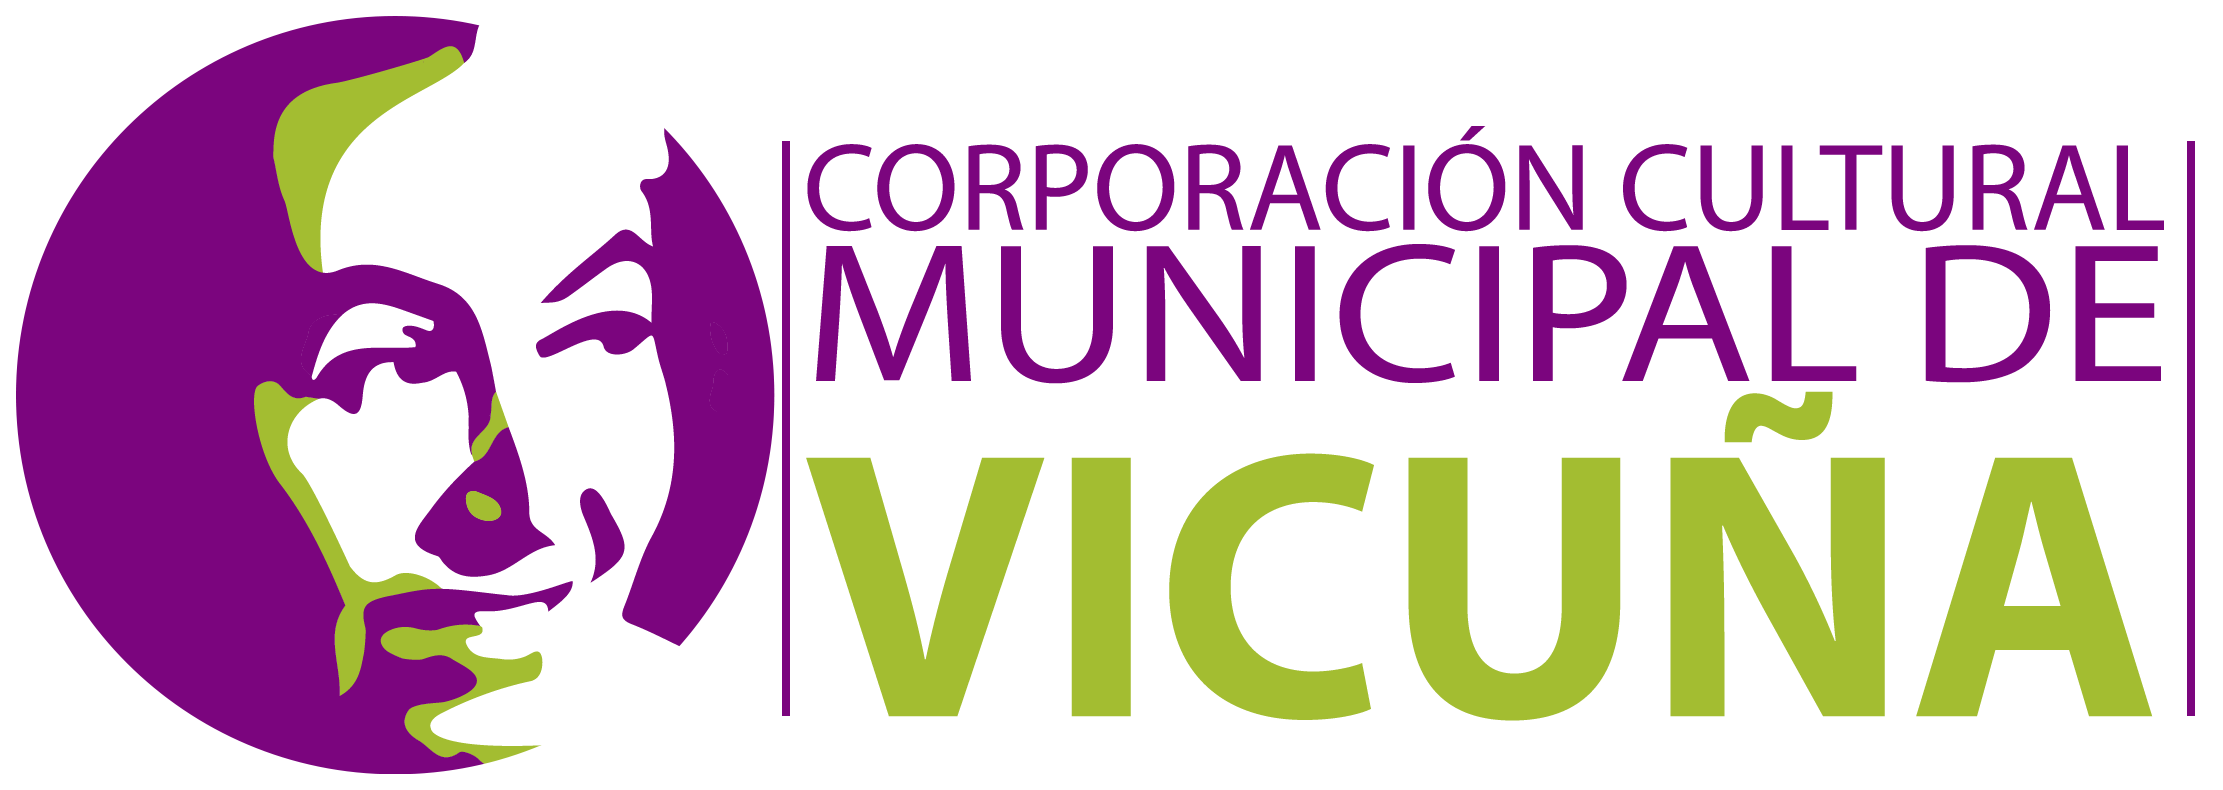 Logo de la Corporación Cultural Municipal de Vicuña